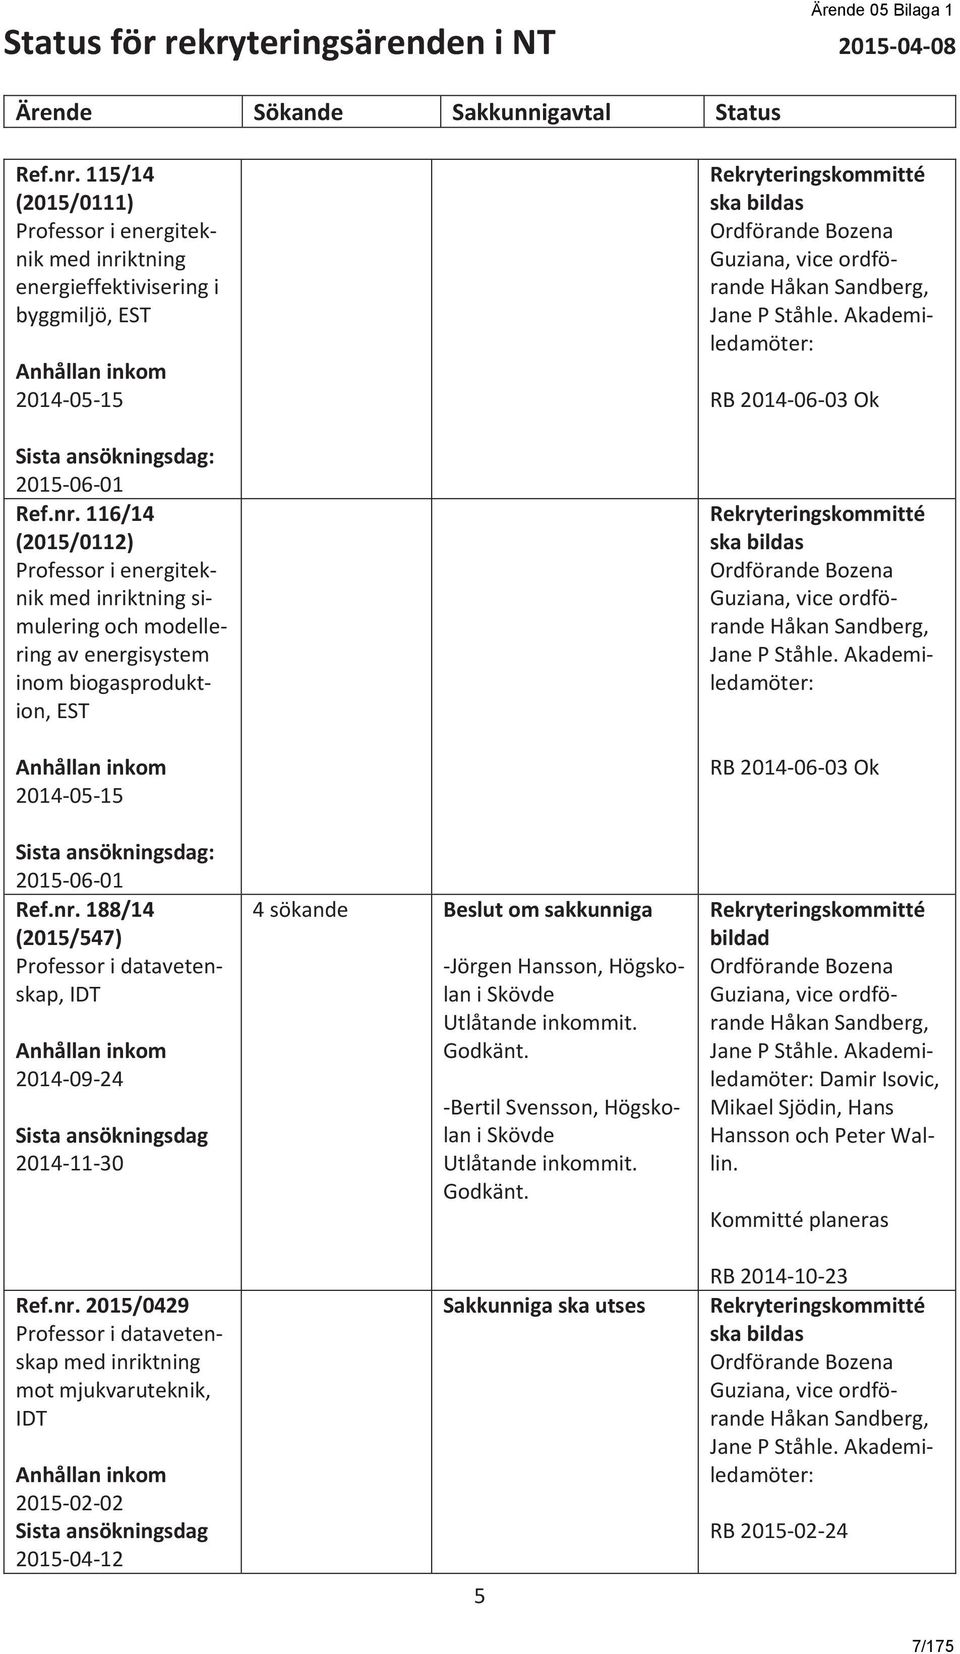 ktning energieffektivisering i byggmiljö, EST Anhållan inkom 2014-05-15 Sista ansökningsdag: 2015-06-01 Ref.nr.